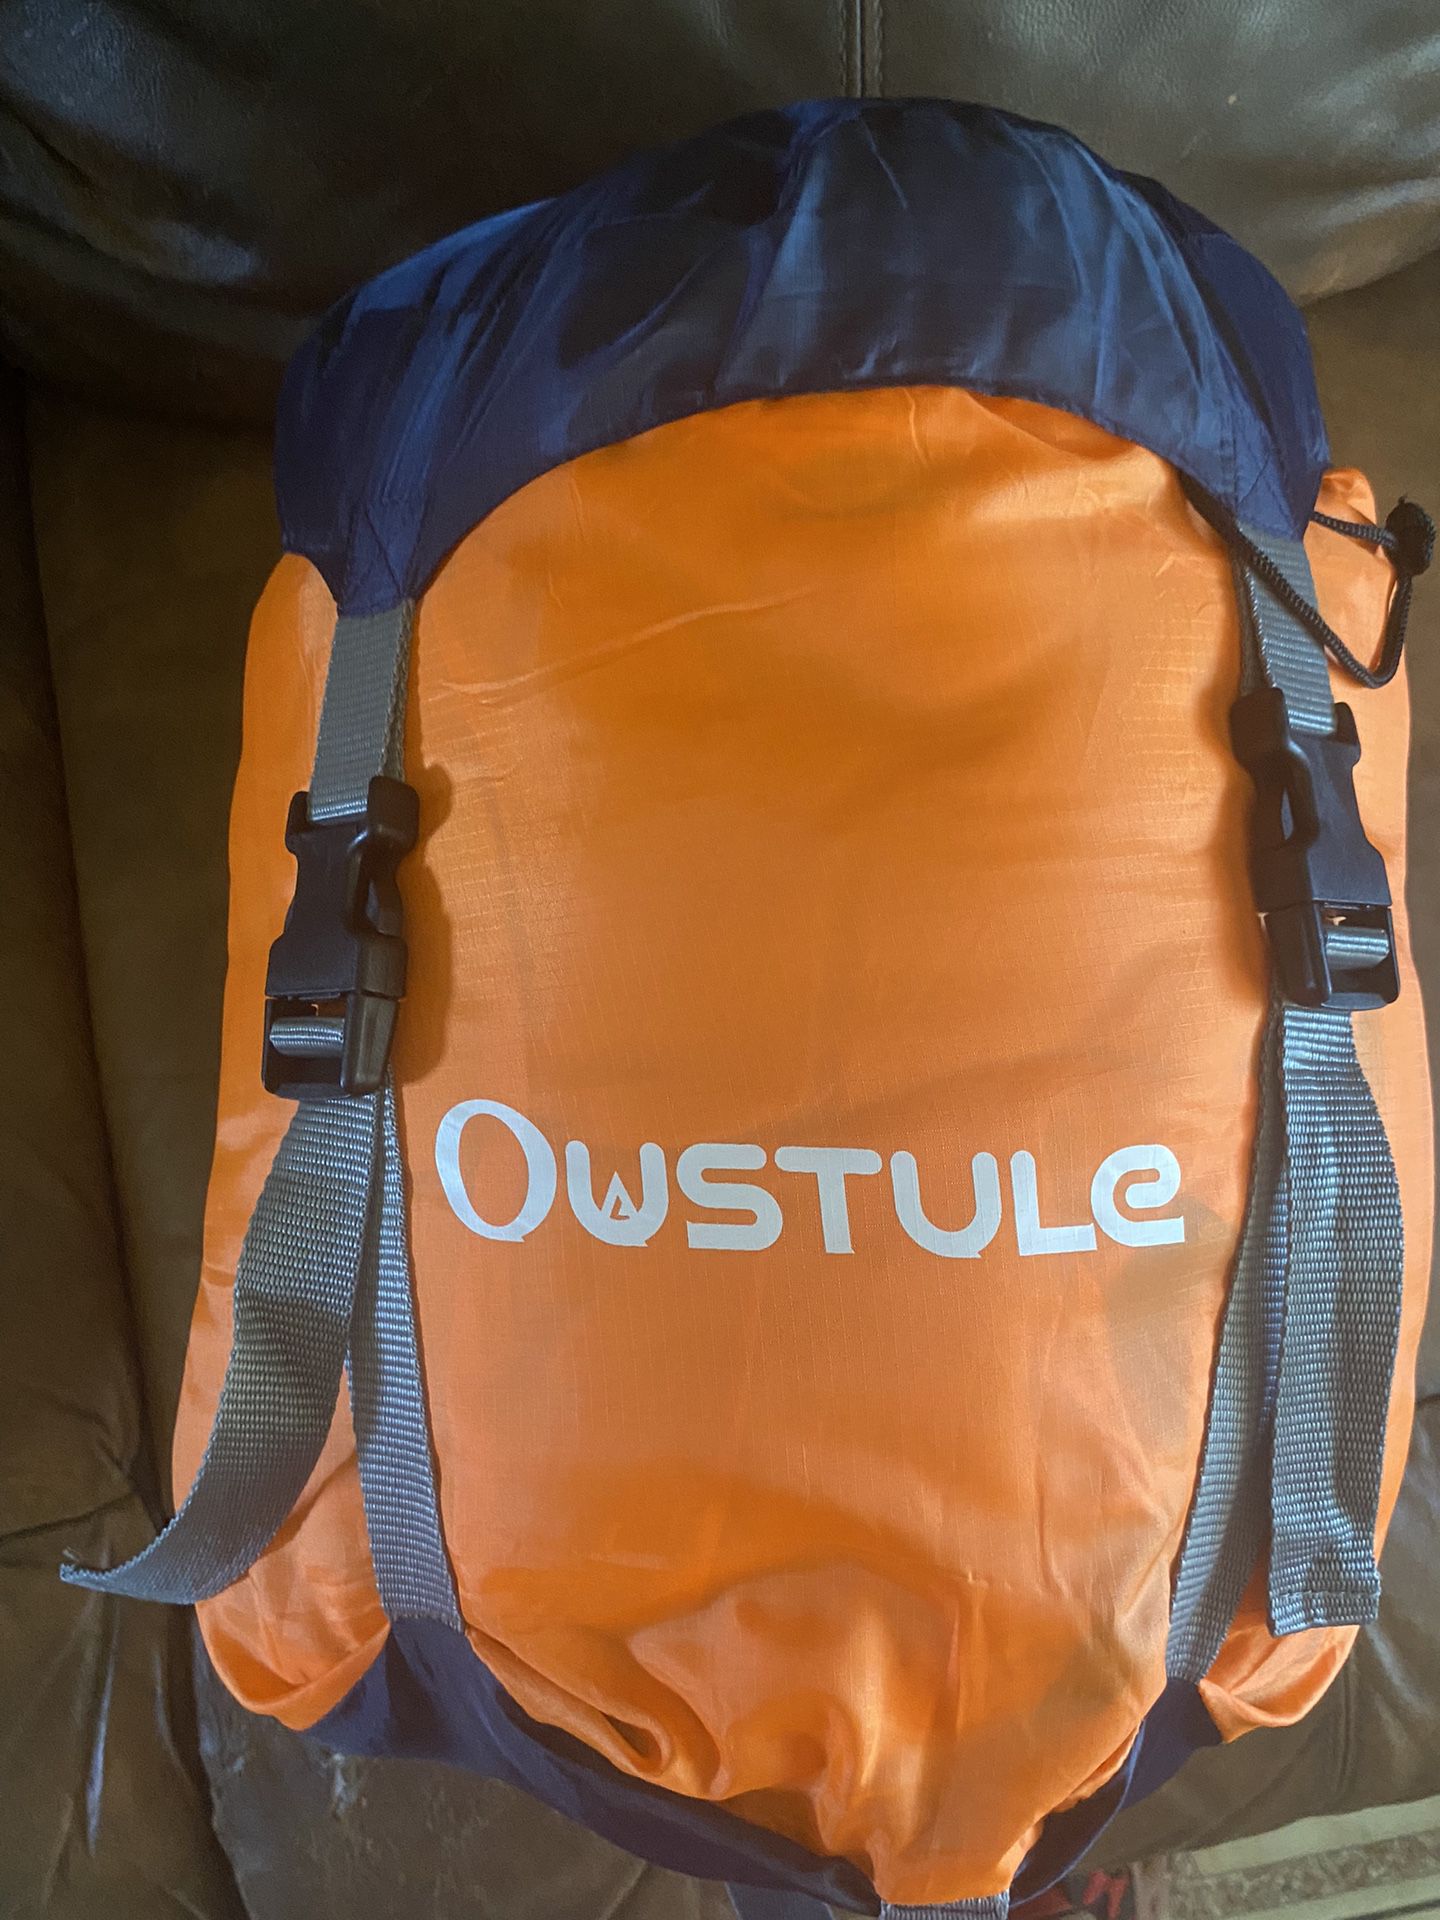 Oustule Waterproof Sleeping Bag